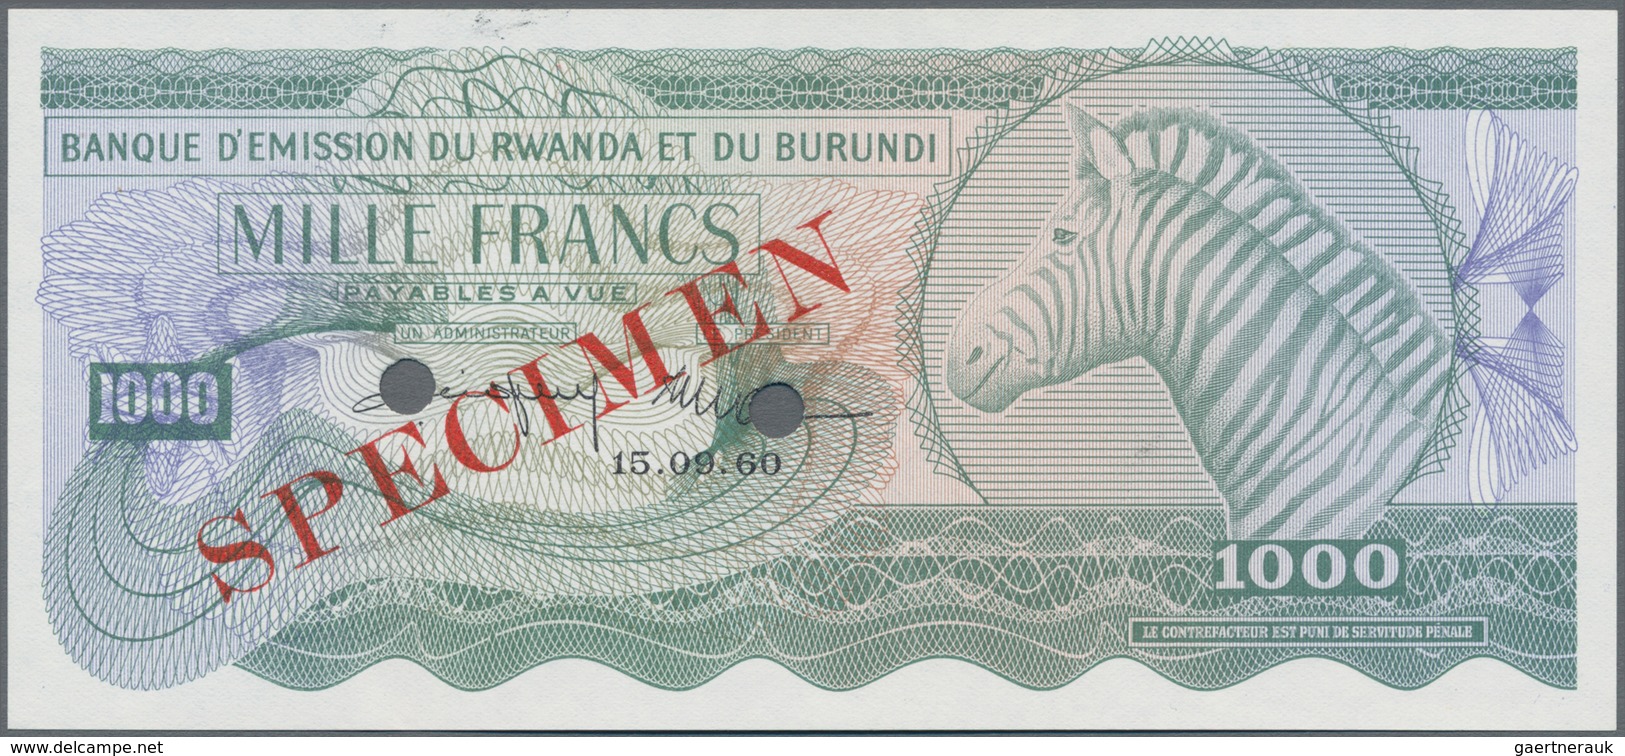 Rwanda-Burundi / Ruanda-Burundi: Banque D'Émission Du Rwanda Et Du Burundi 1000 Francs September 15t - Ruanda-Burundi